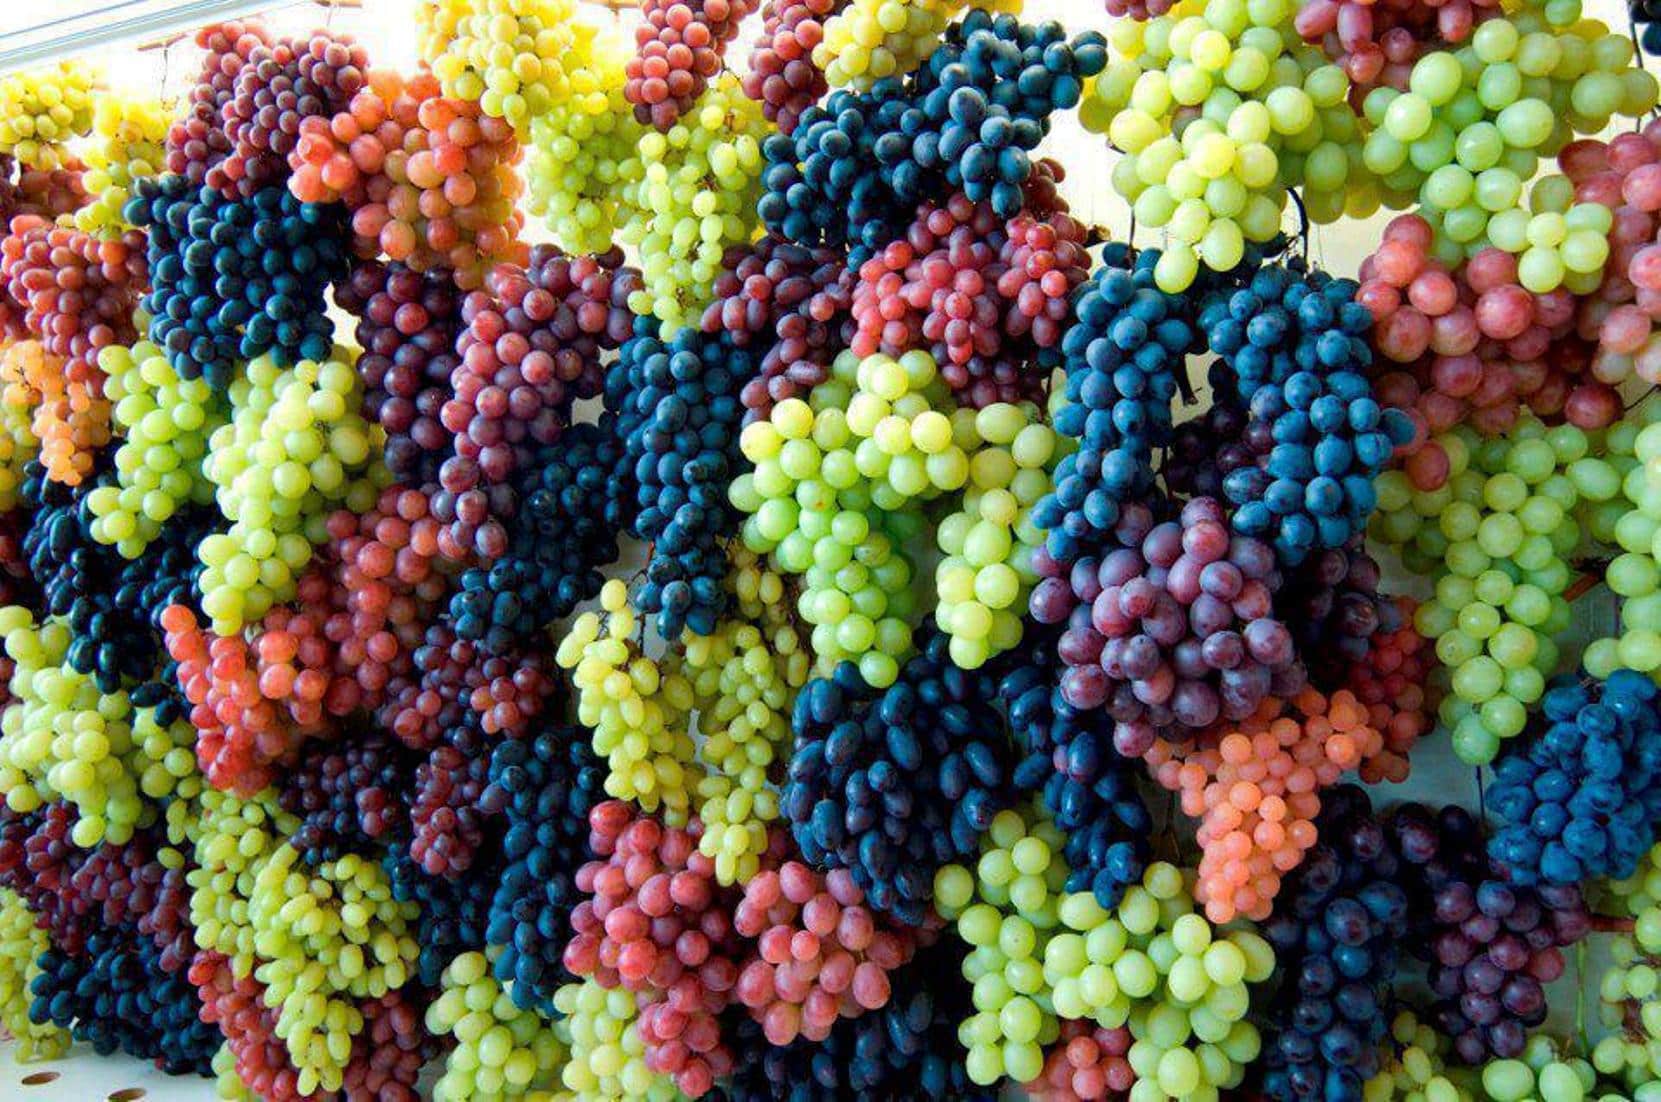 Чем подкормить виноград - самые эффективные методы и средства